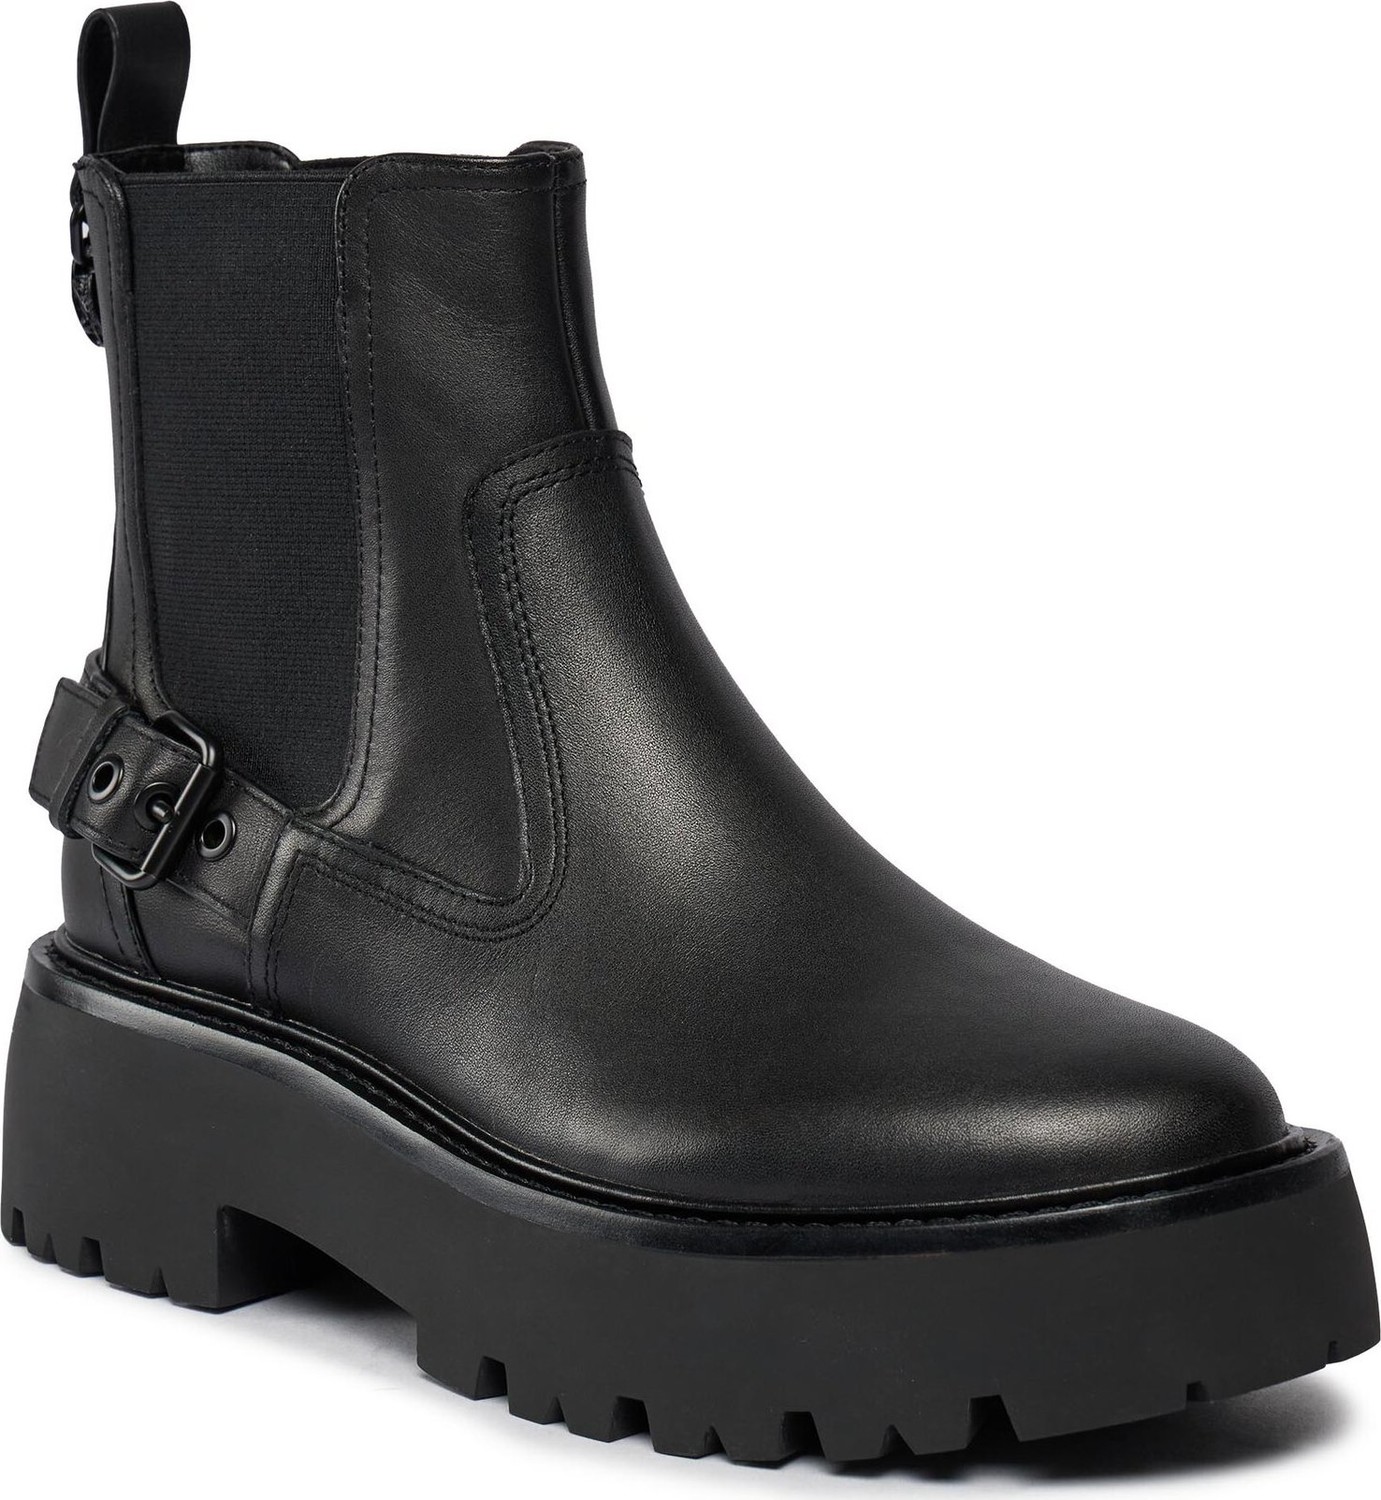 Kotníková obuv s elastickým prvkem Kurt Geiger 225-Matilda Chelsea Boot 655000109 Black